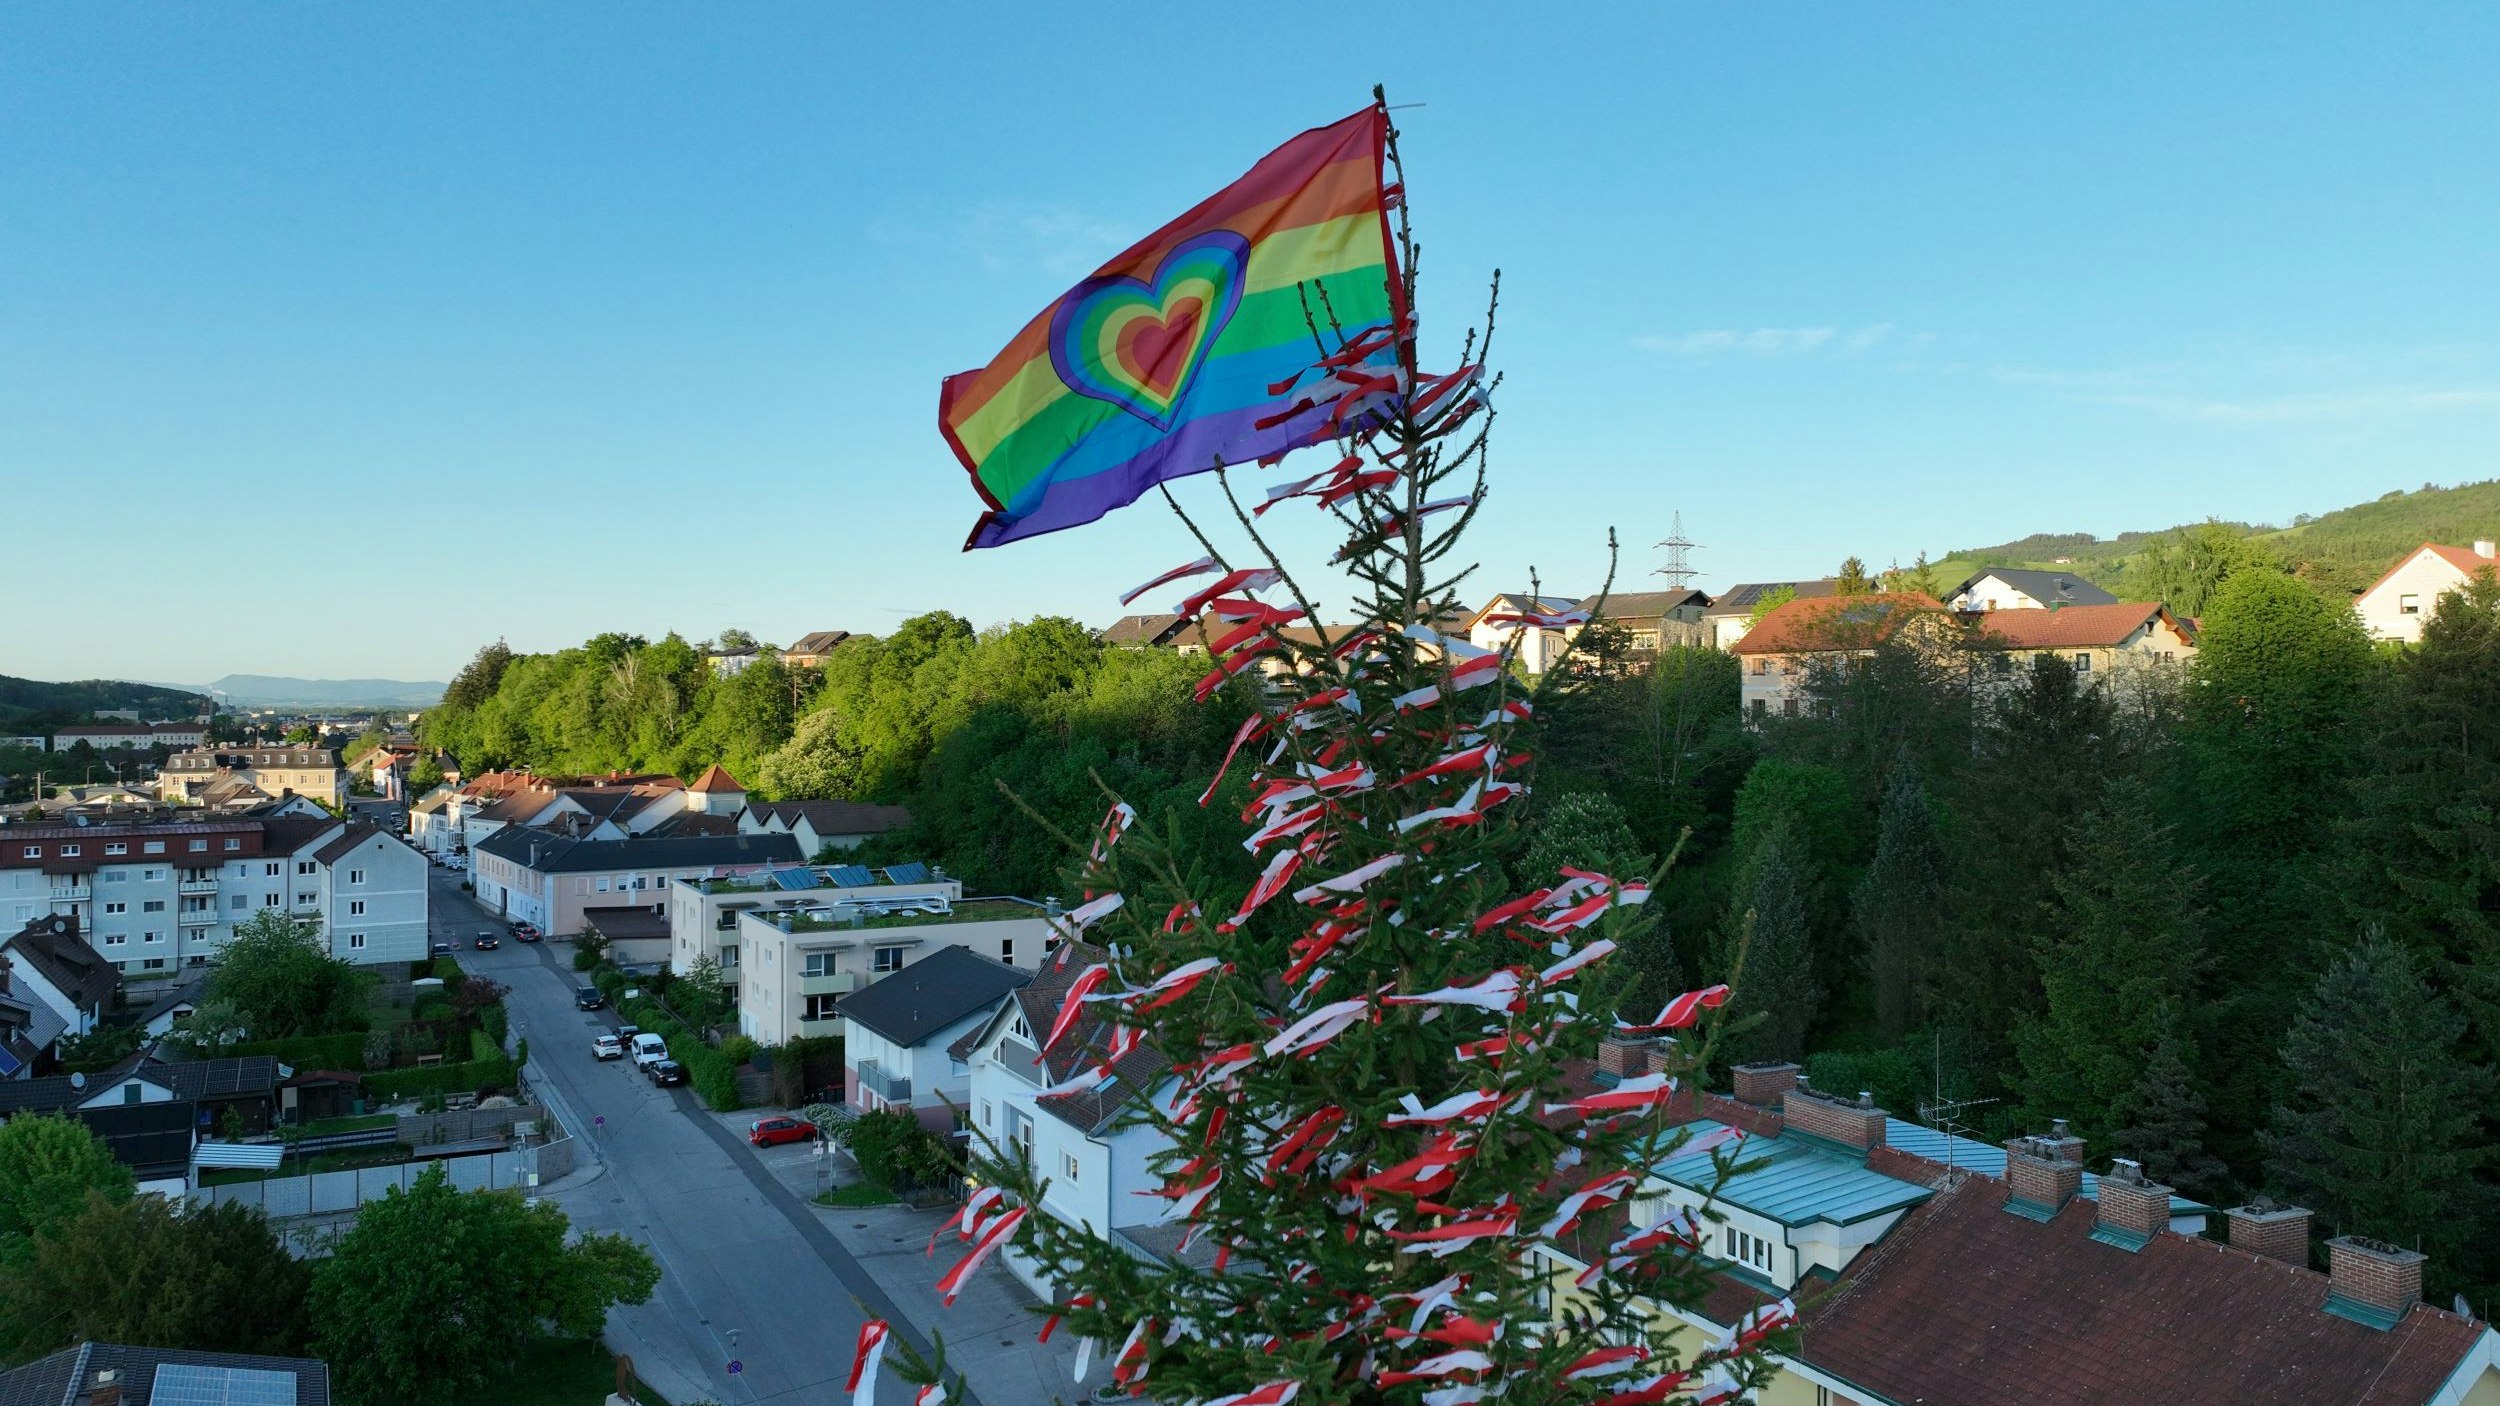 regenbogenflagge am maibaum, dorfbewohner nicht erfreut